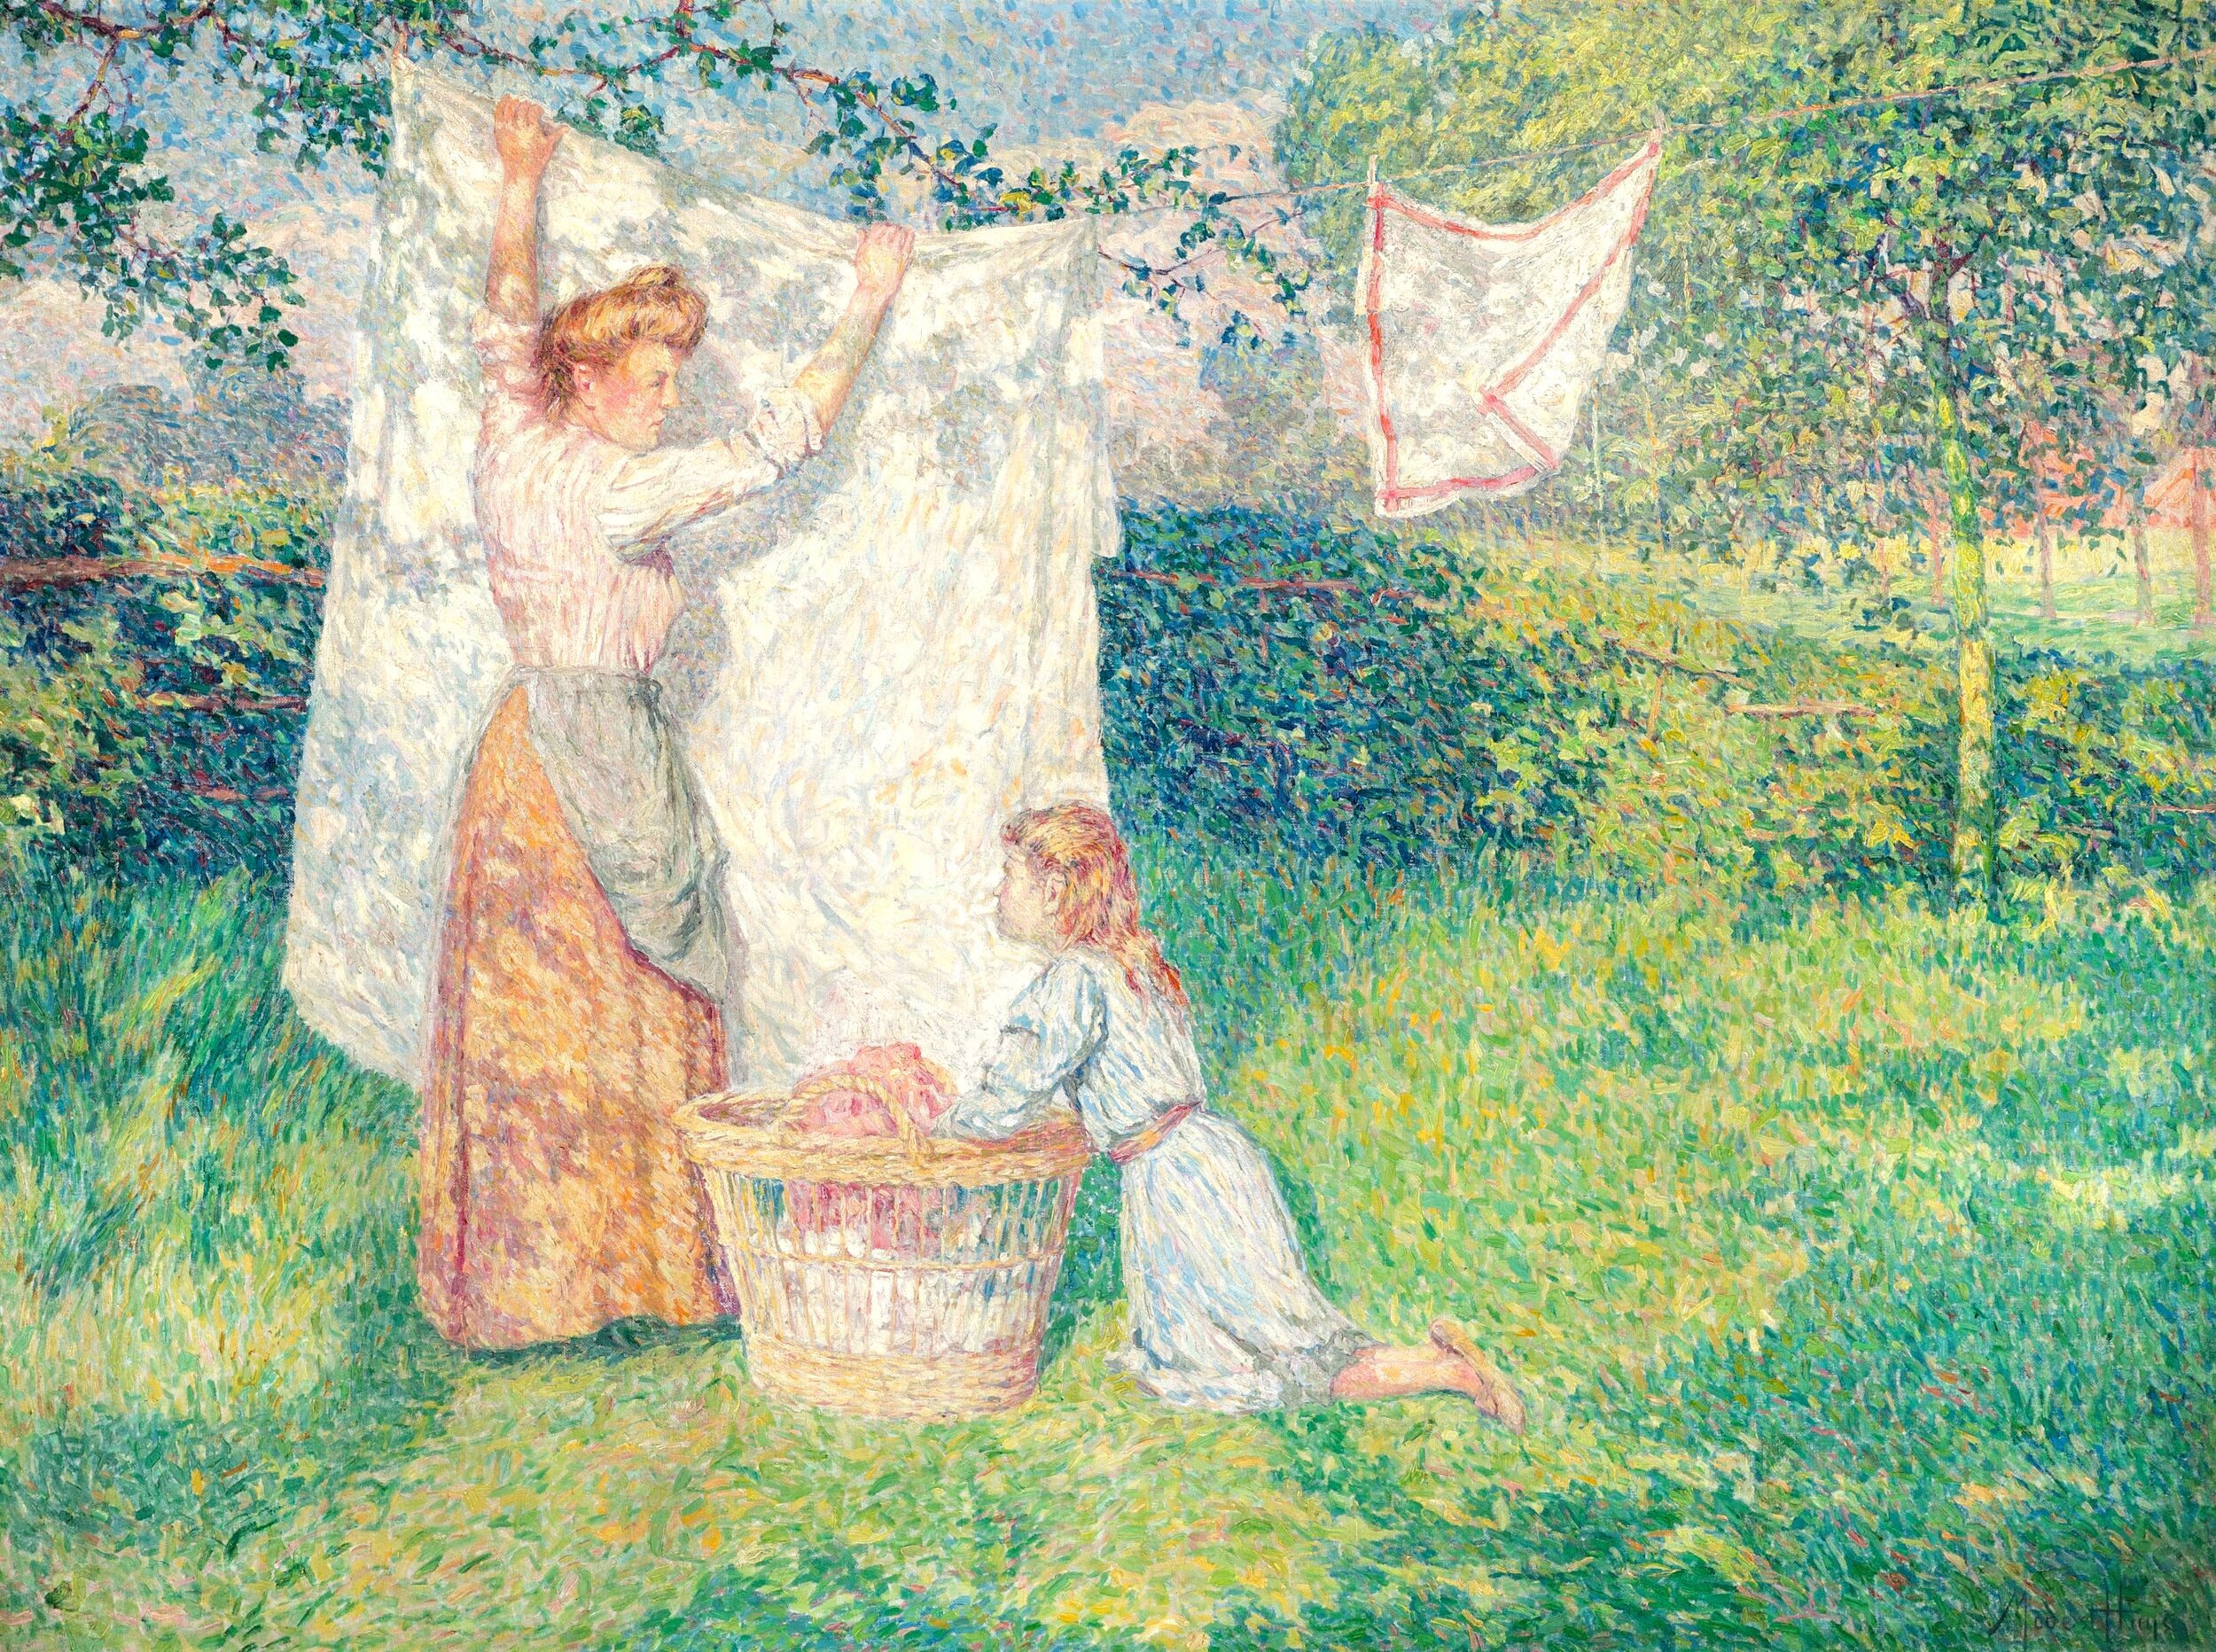 Çamaşırları Kurutma (Drying the Laundry) by Modest Huys - 1908 - 95 x 128 cm özel koleksiyon